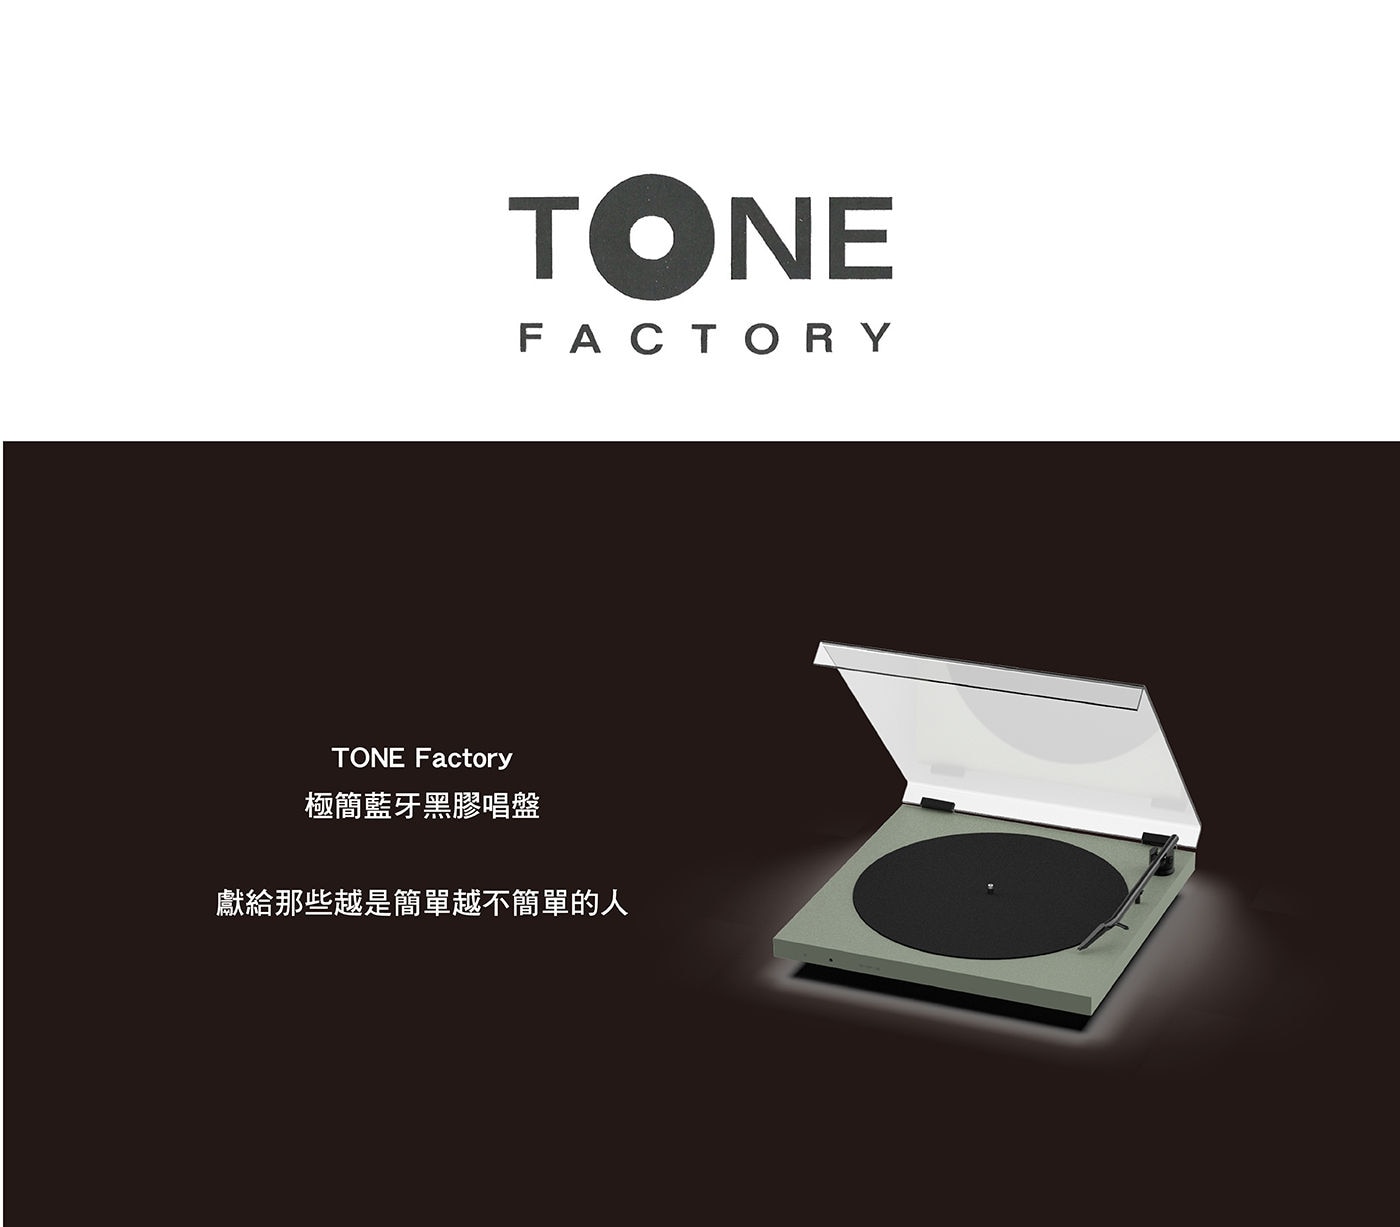 TONE Factory 藍牙黑膠唱盤 含防塵蓋獻給那些越是簡單越不簡單的人